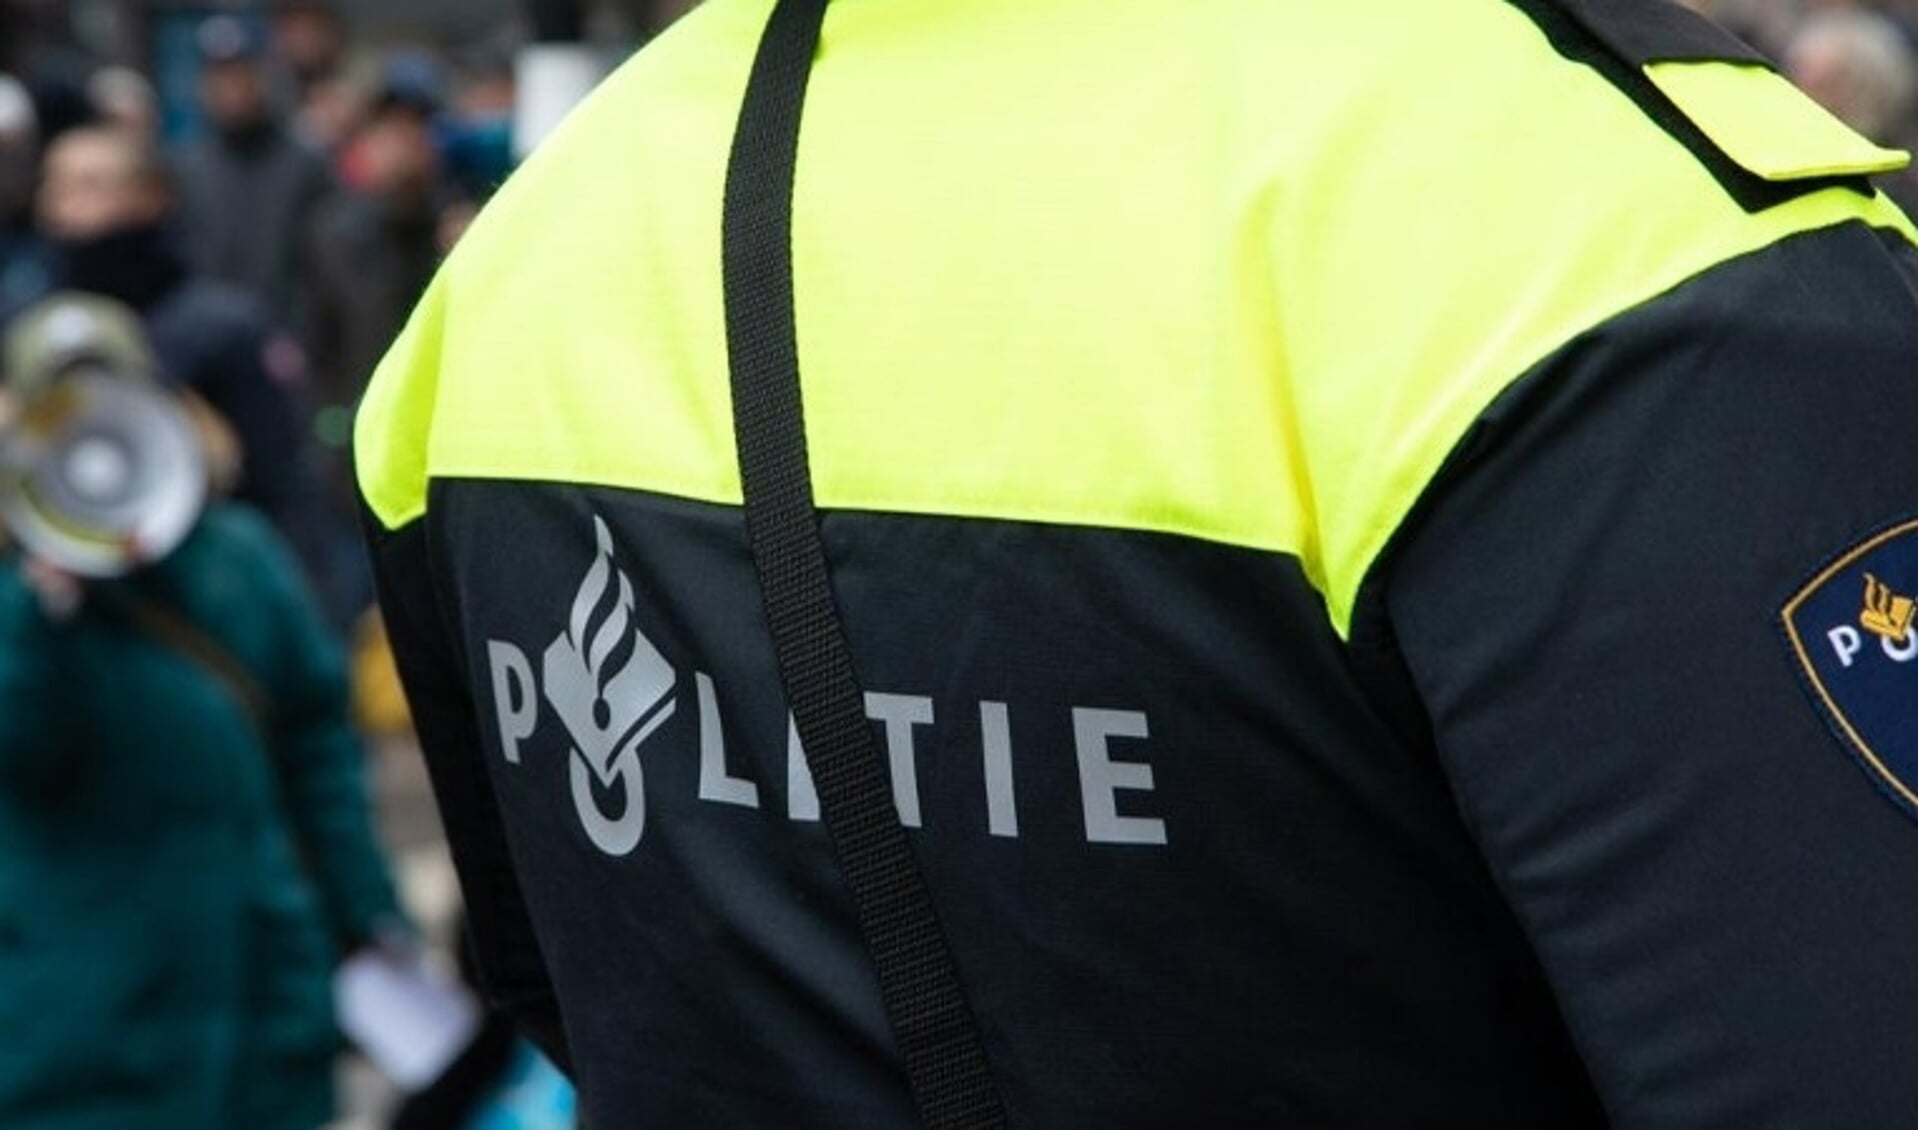 De controle was een samenwerking van gemeente Purmerend met politie, de Nederlandse Arbeidsinspectie en Nederlandse Voedsel- en Warenautoriteit. 